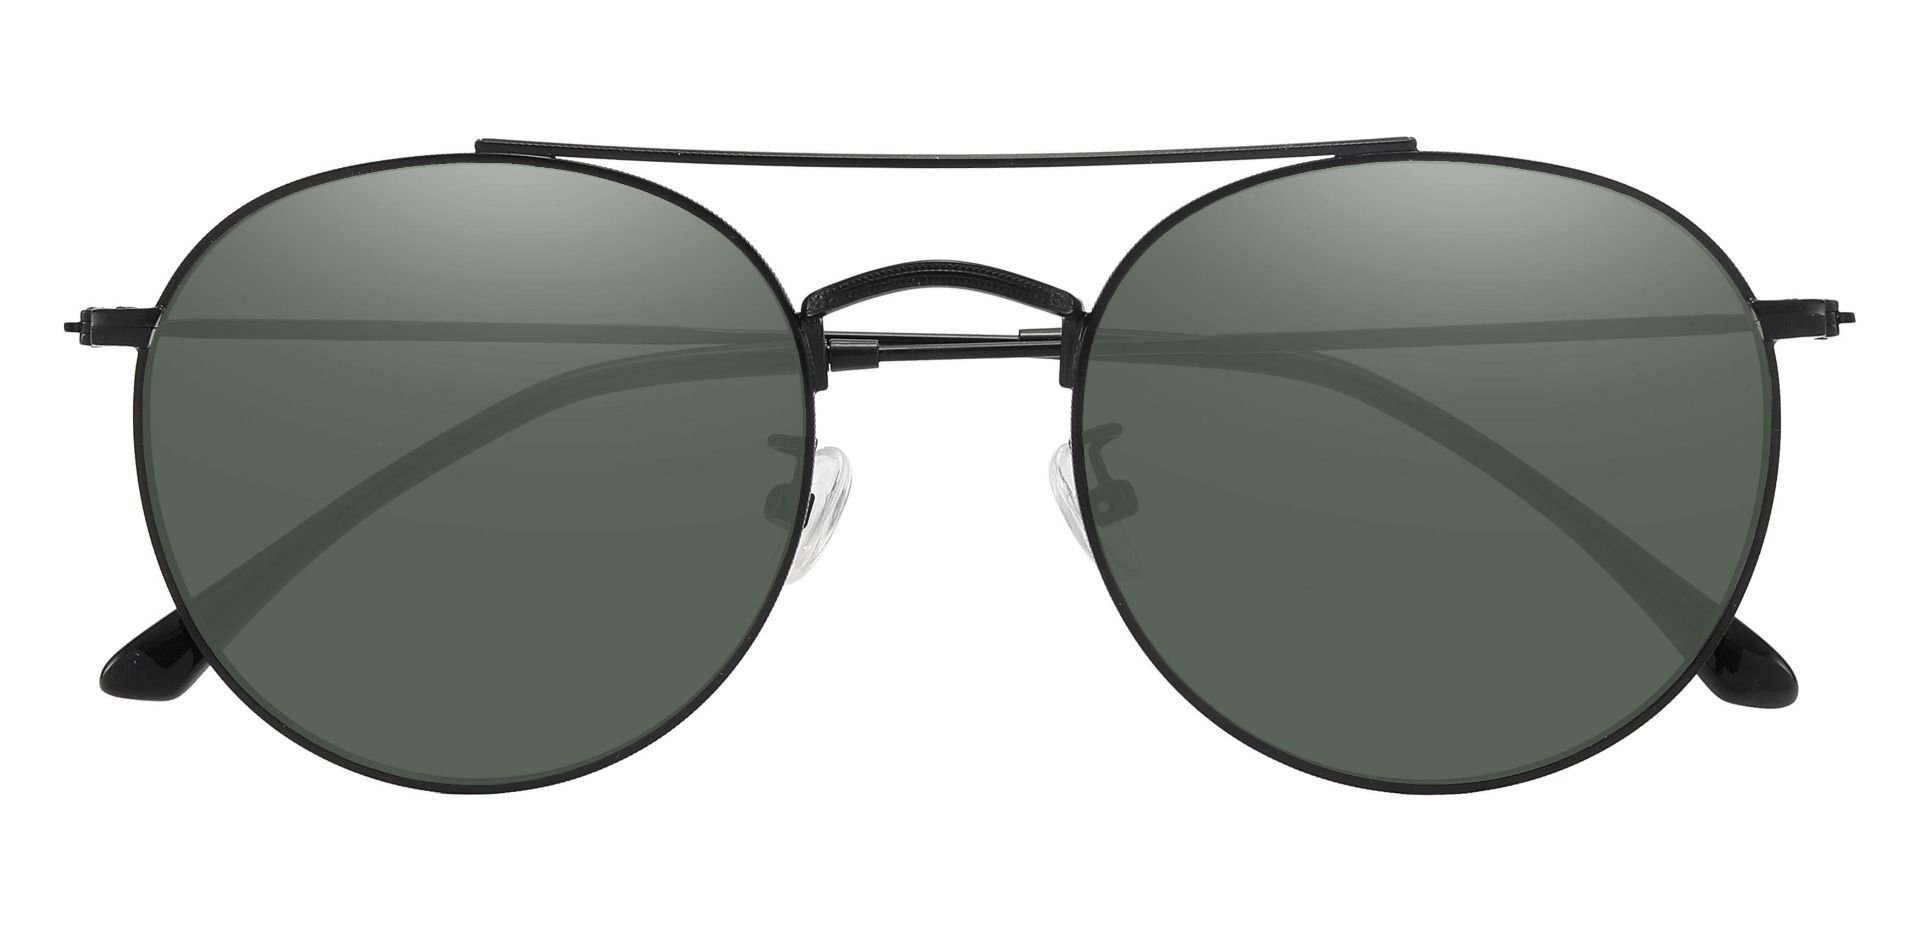 Junction Aviator Prescription Sunglasses - Black Frame With Green Lenses